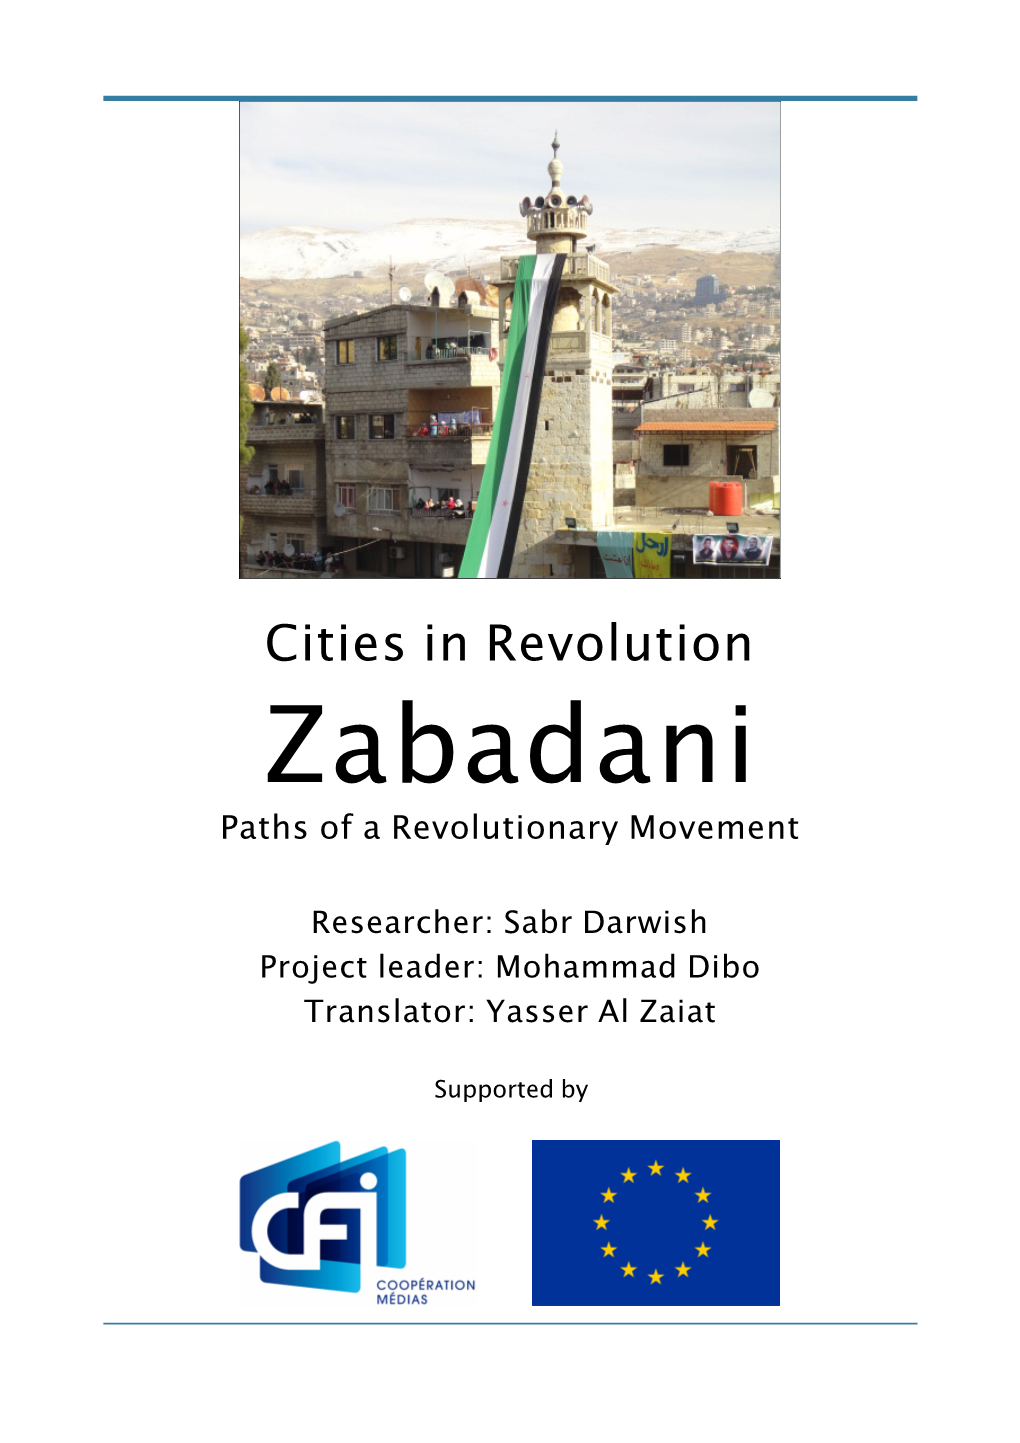 Zabadani Paths of a Revolutionary Movement